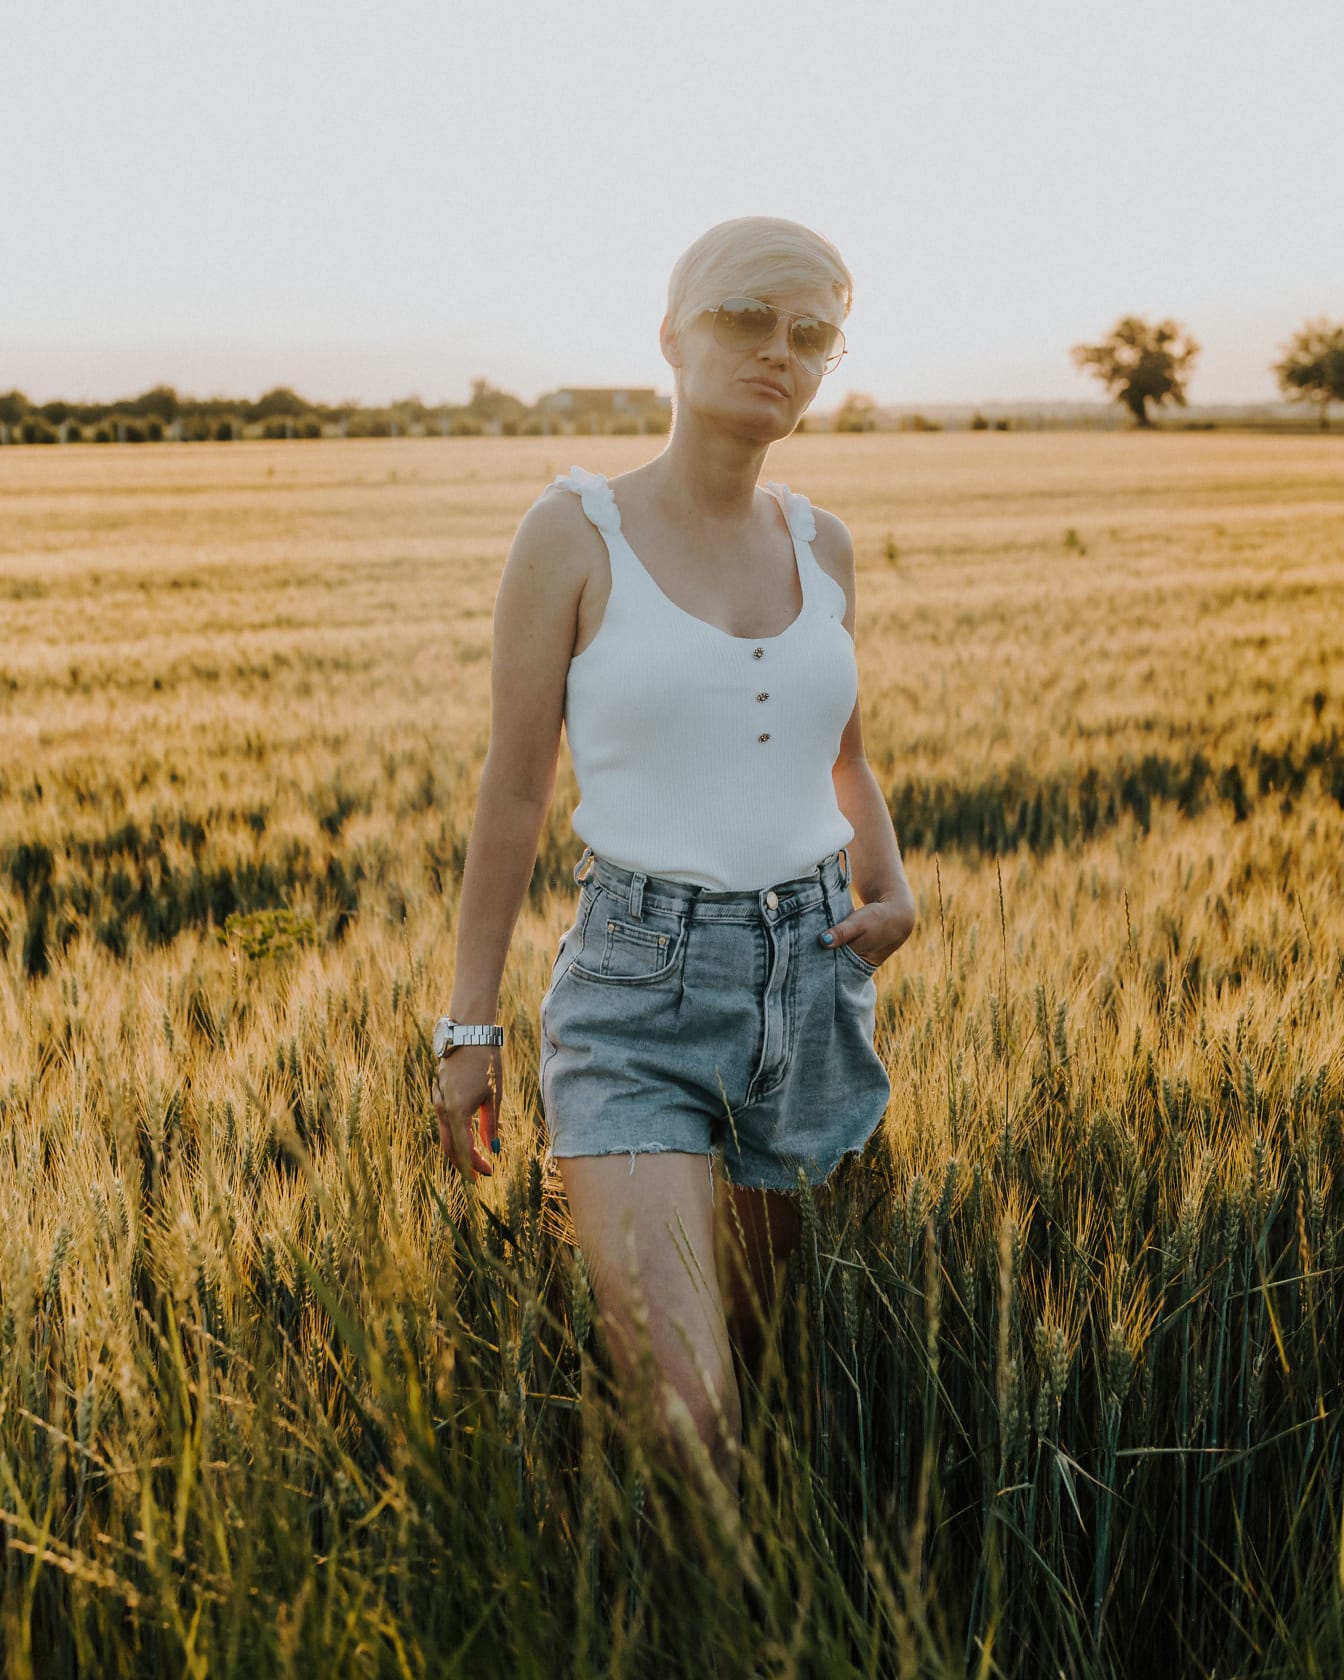 Cô gái tóc vàng ưa nhìn tạo dáng trong chiếc quần ngắn trên cánh đồng lúa mì